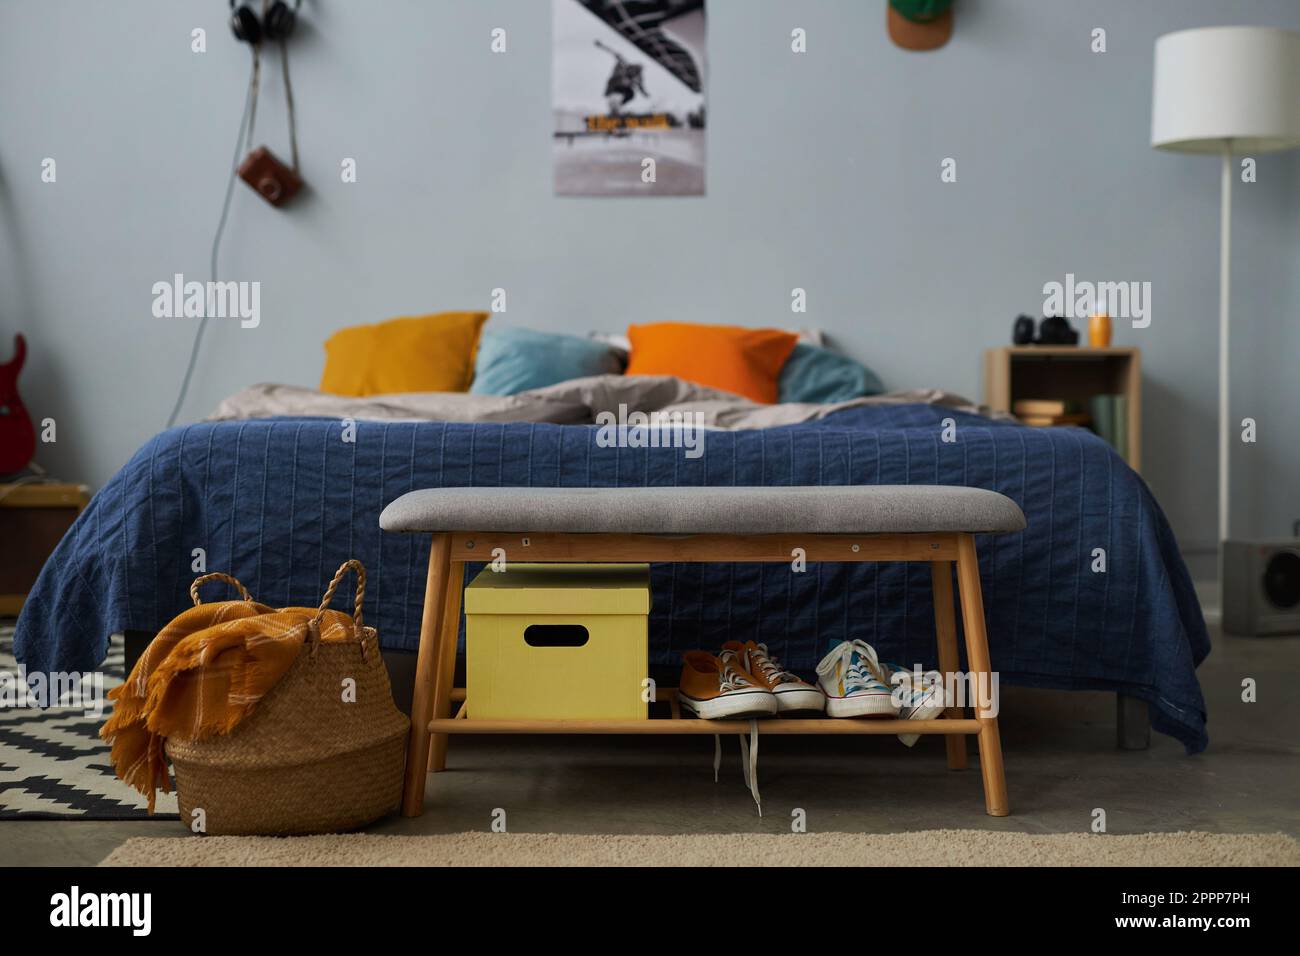 Weiche graue Bank mit zwei Paar neuen Gummischuhen und gelbem Kasten vor einem komfortablen Doppelbett mit einer Gruppe Kissen im Schlafzimmer Stockfoto